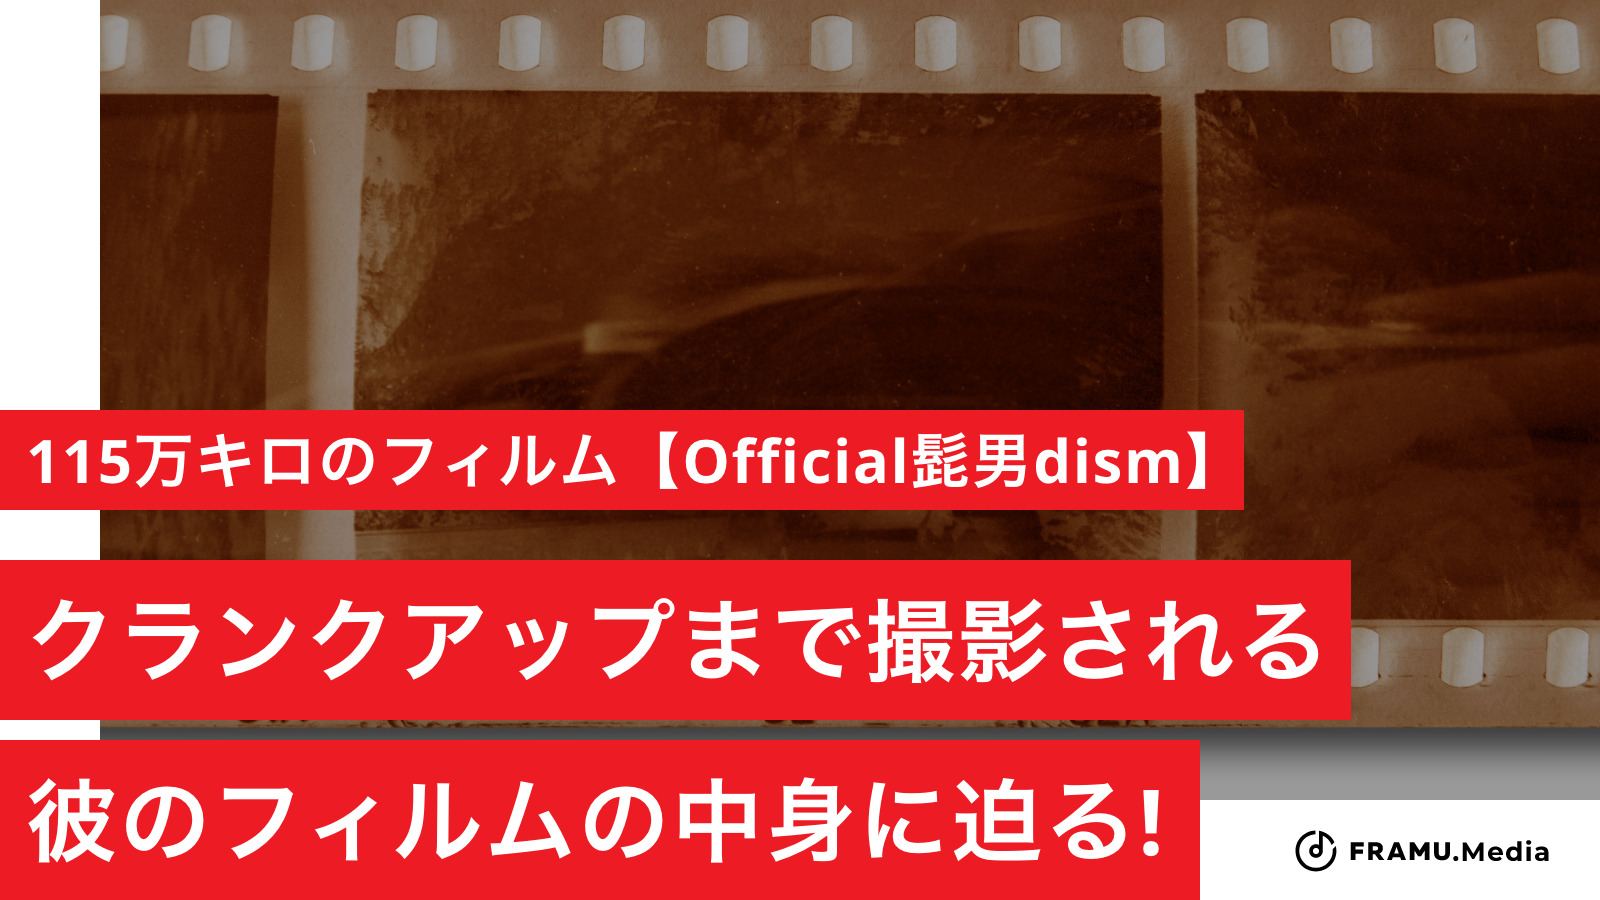 115万キロのフィルム Official髭男dism 歌詞の意味を考察 クランクアップまで撮影される彼のフィルムの中身に迫る Framu Media